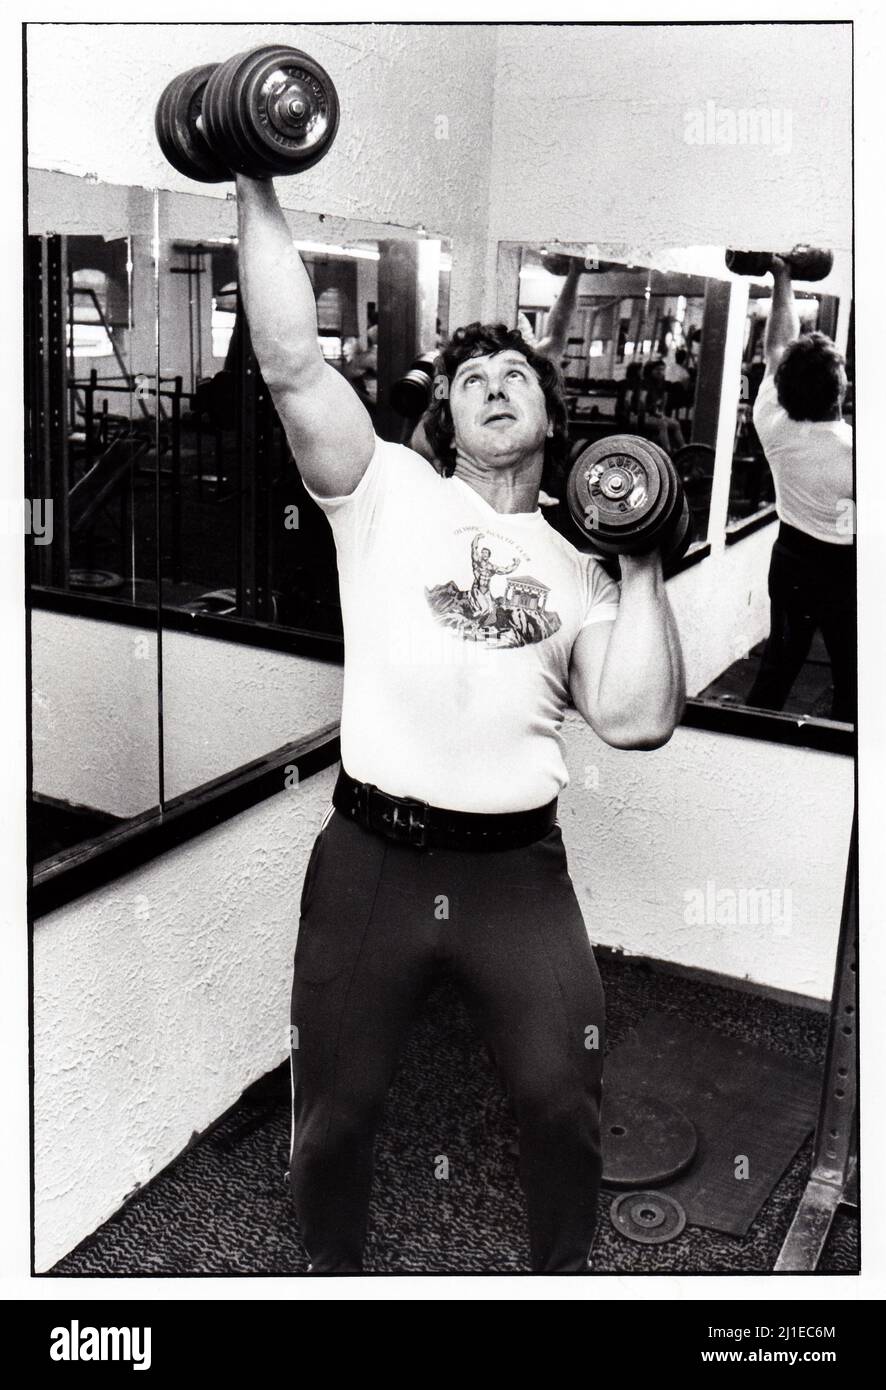 Al Oerter, medaglia d'oro vincitrice olimpica per quattro volte. A Long Island, New York, sollevamento pesi pesanti in palestra. 1979 Foto Stock